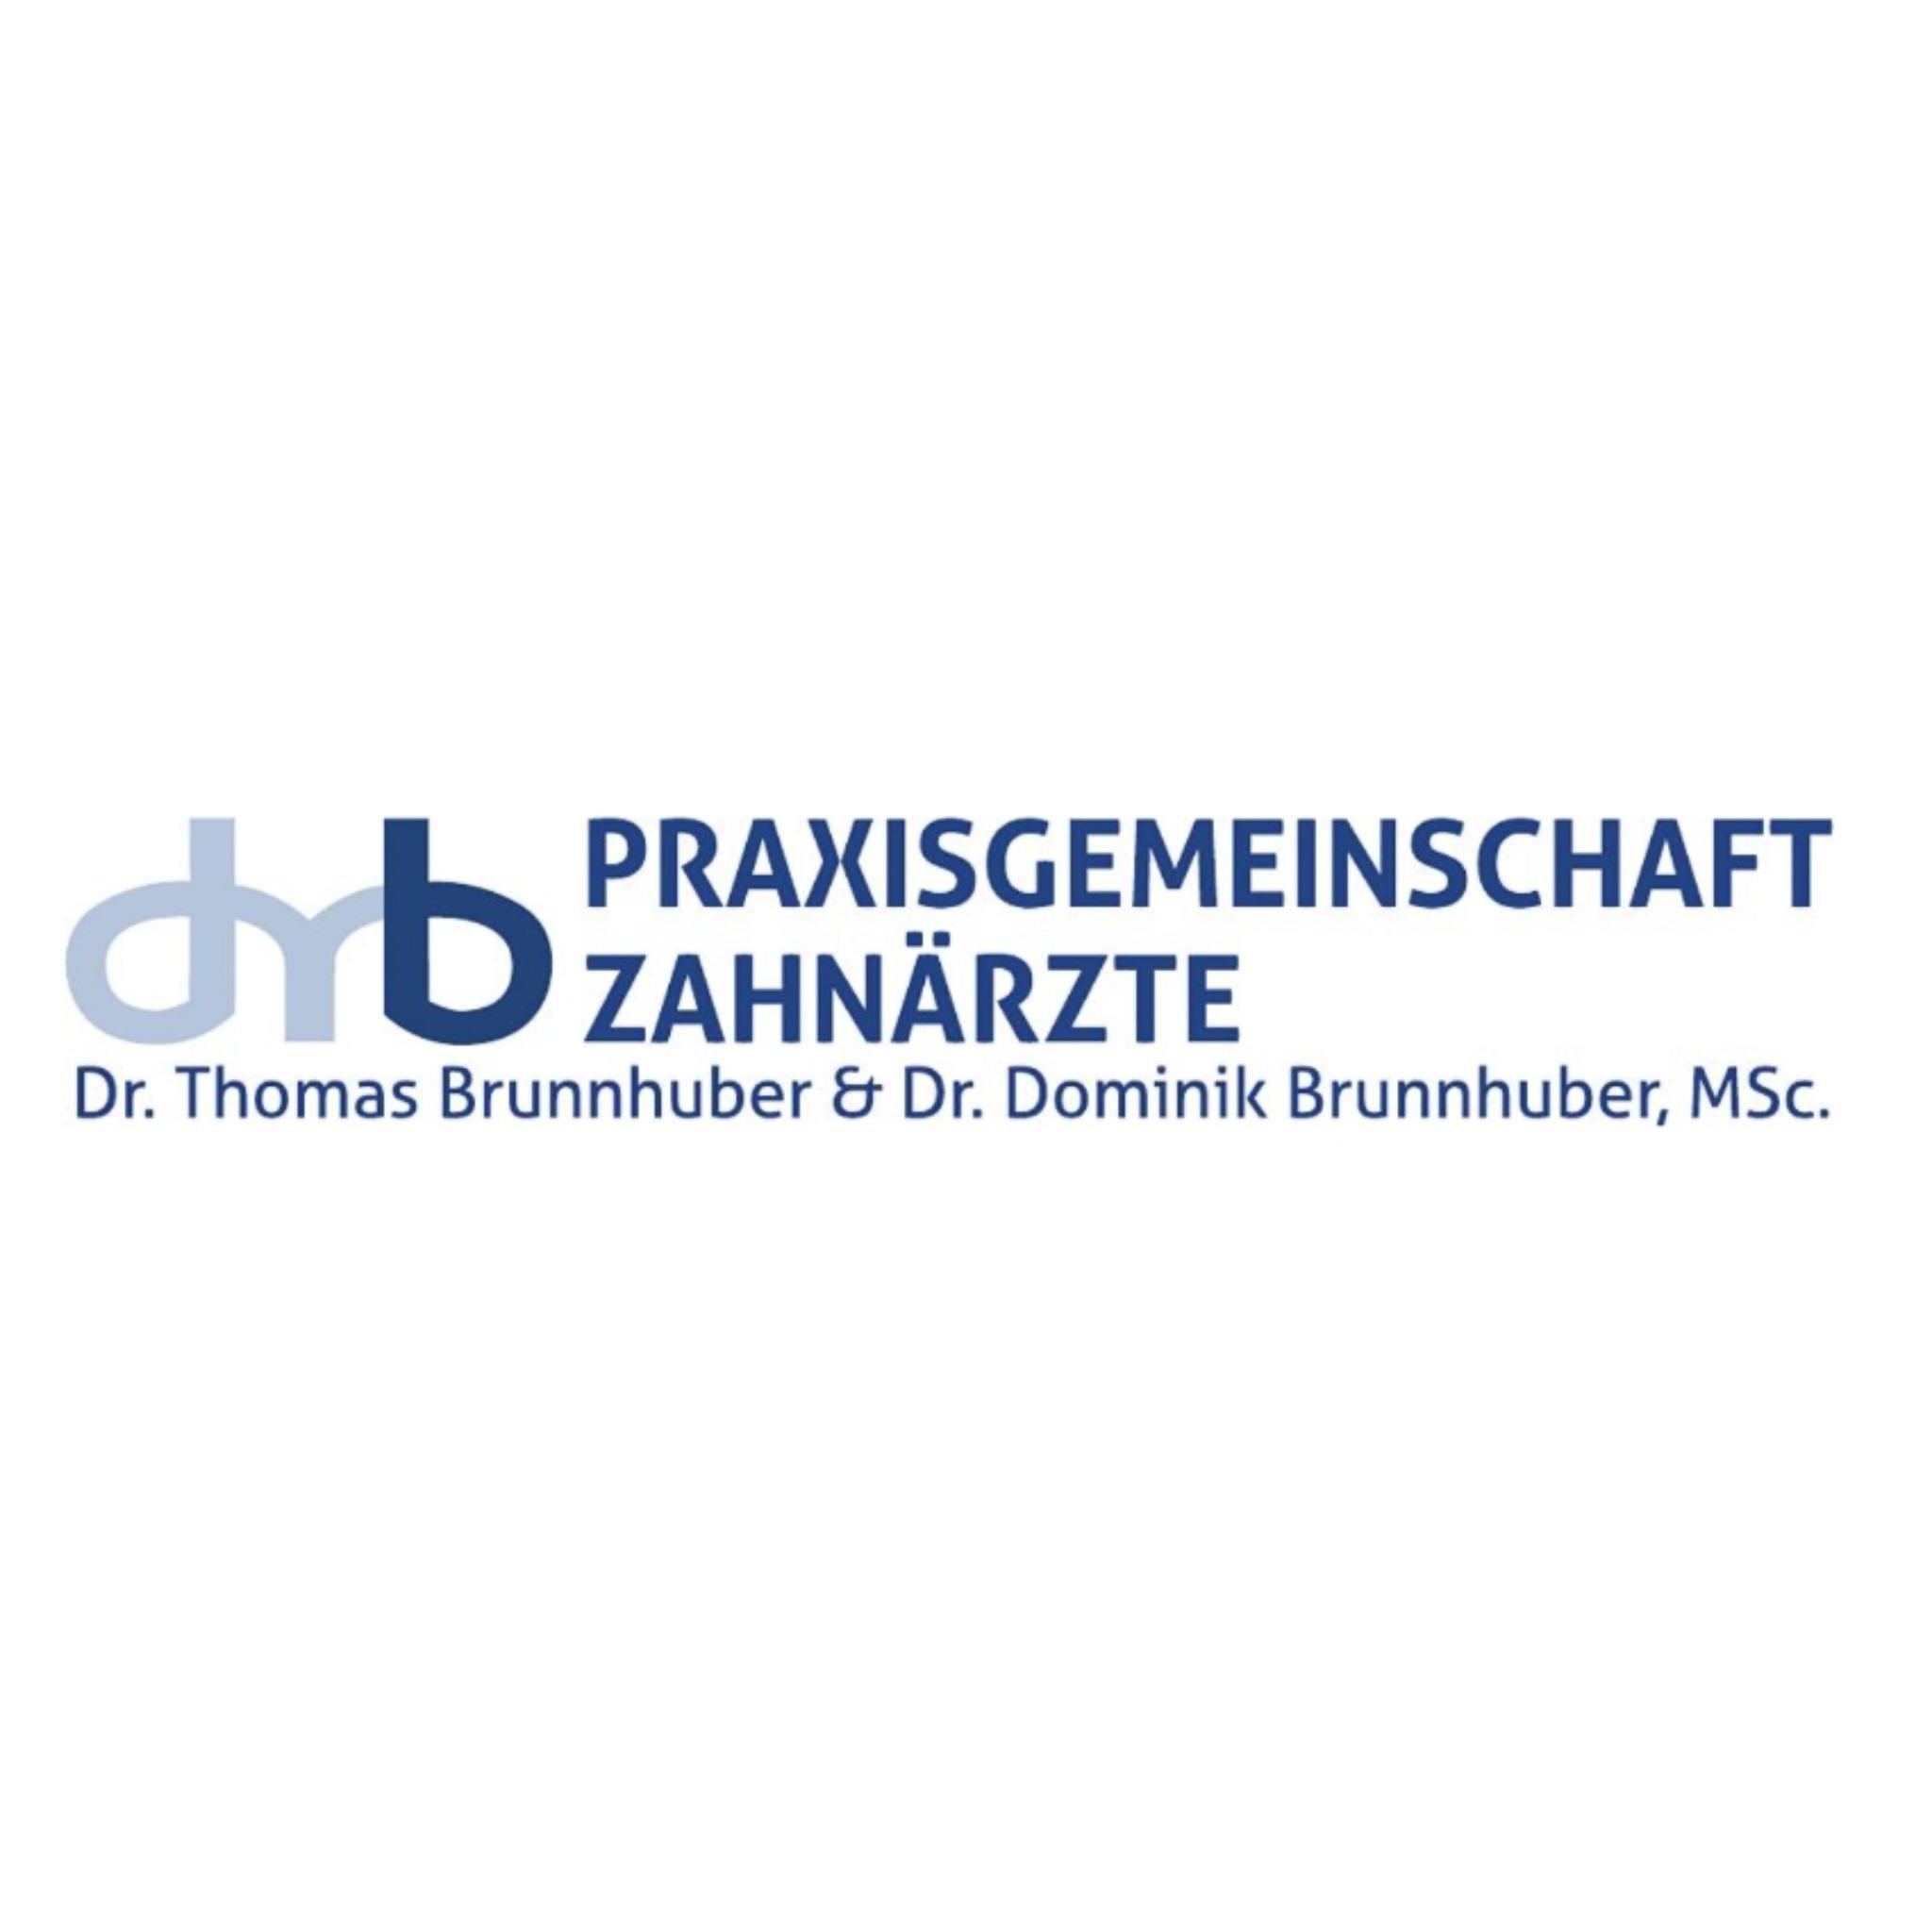 Praxisgemeinschaft Zahnärzte Dr. med. dent. Thomas Brunnhuber & Dr. med. dent. Dominik Brunnhuber, Msc. in Simbach am Inn - Logo